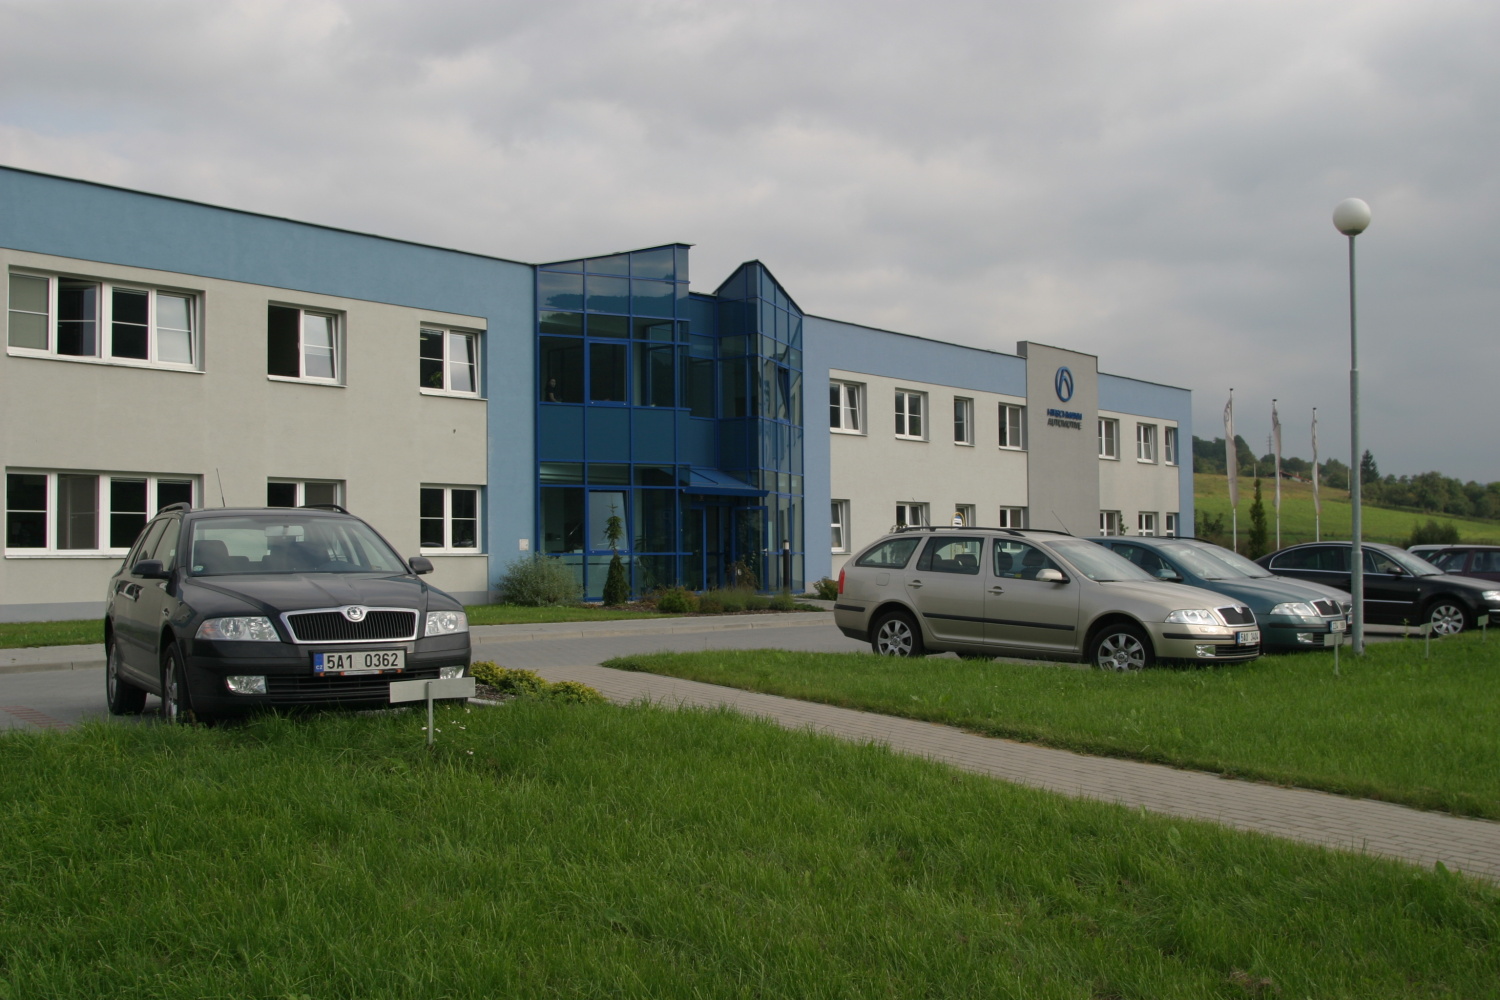 Projekt výrobní ocelové haly pro Hirschamnn ve Vsetíně dodal Centroprojekt